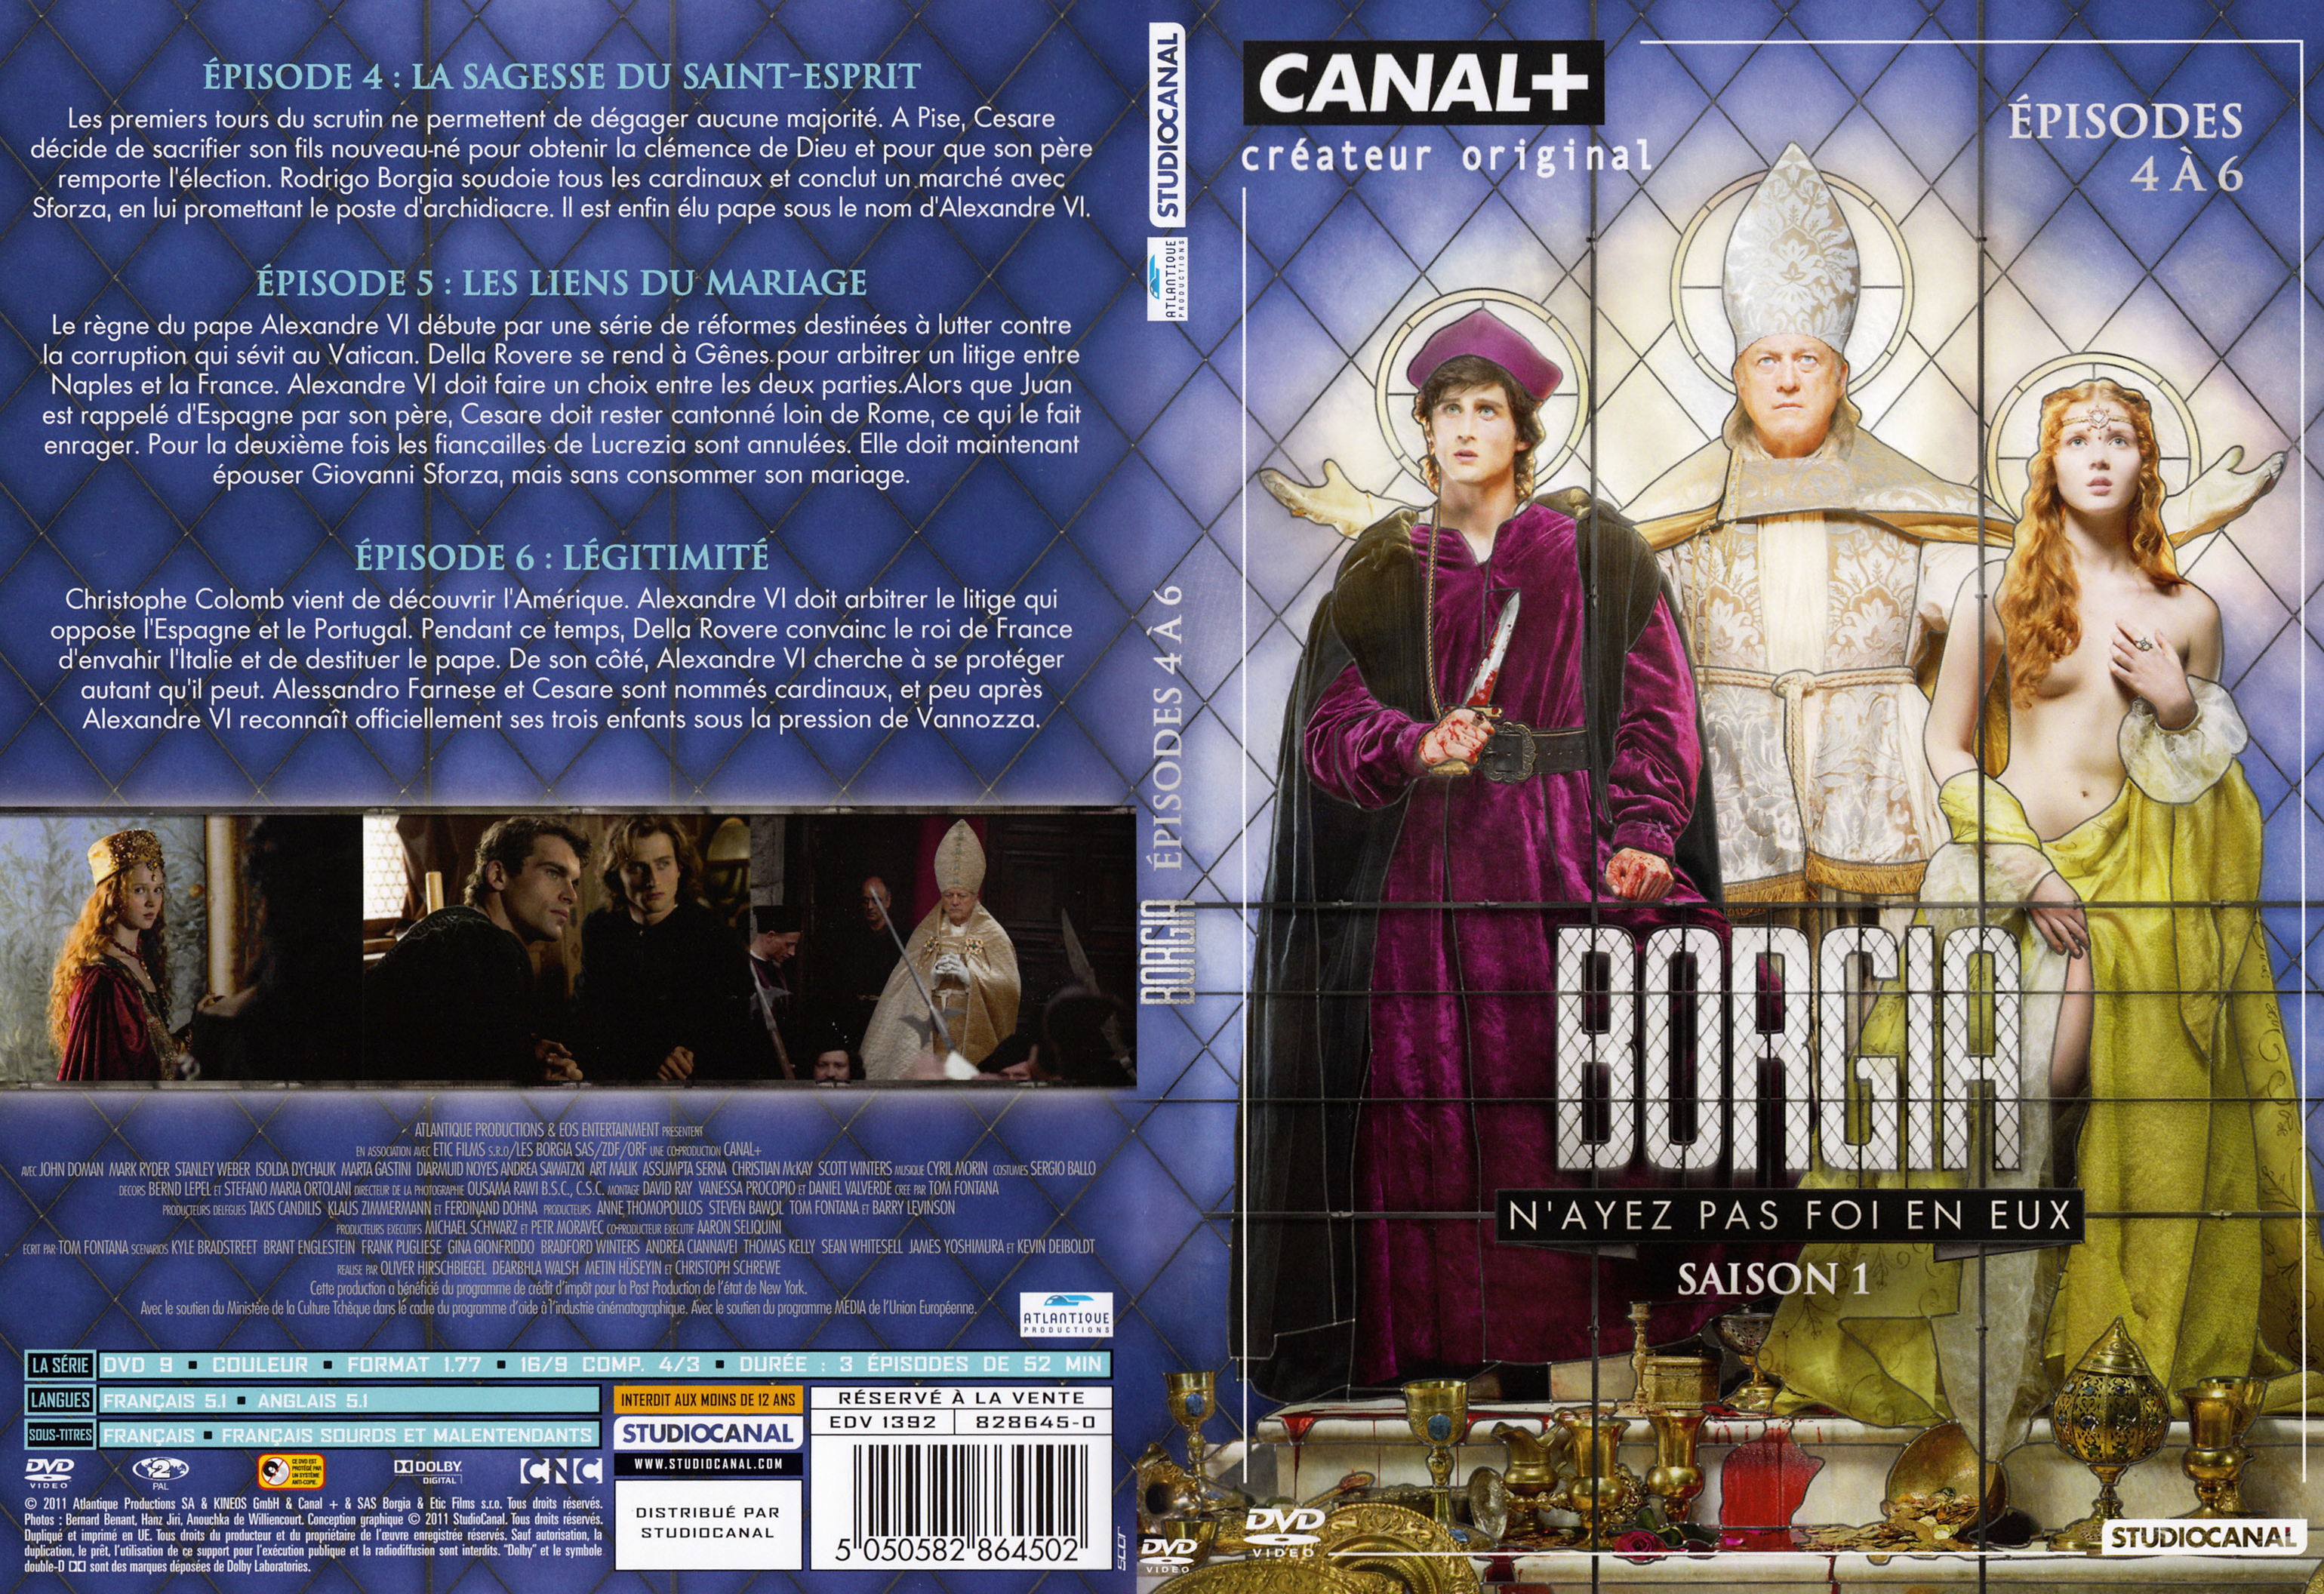 Jaquette DVD Borgia Saison 1 DVD 2 v2